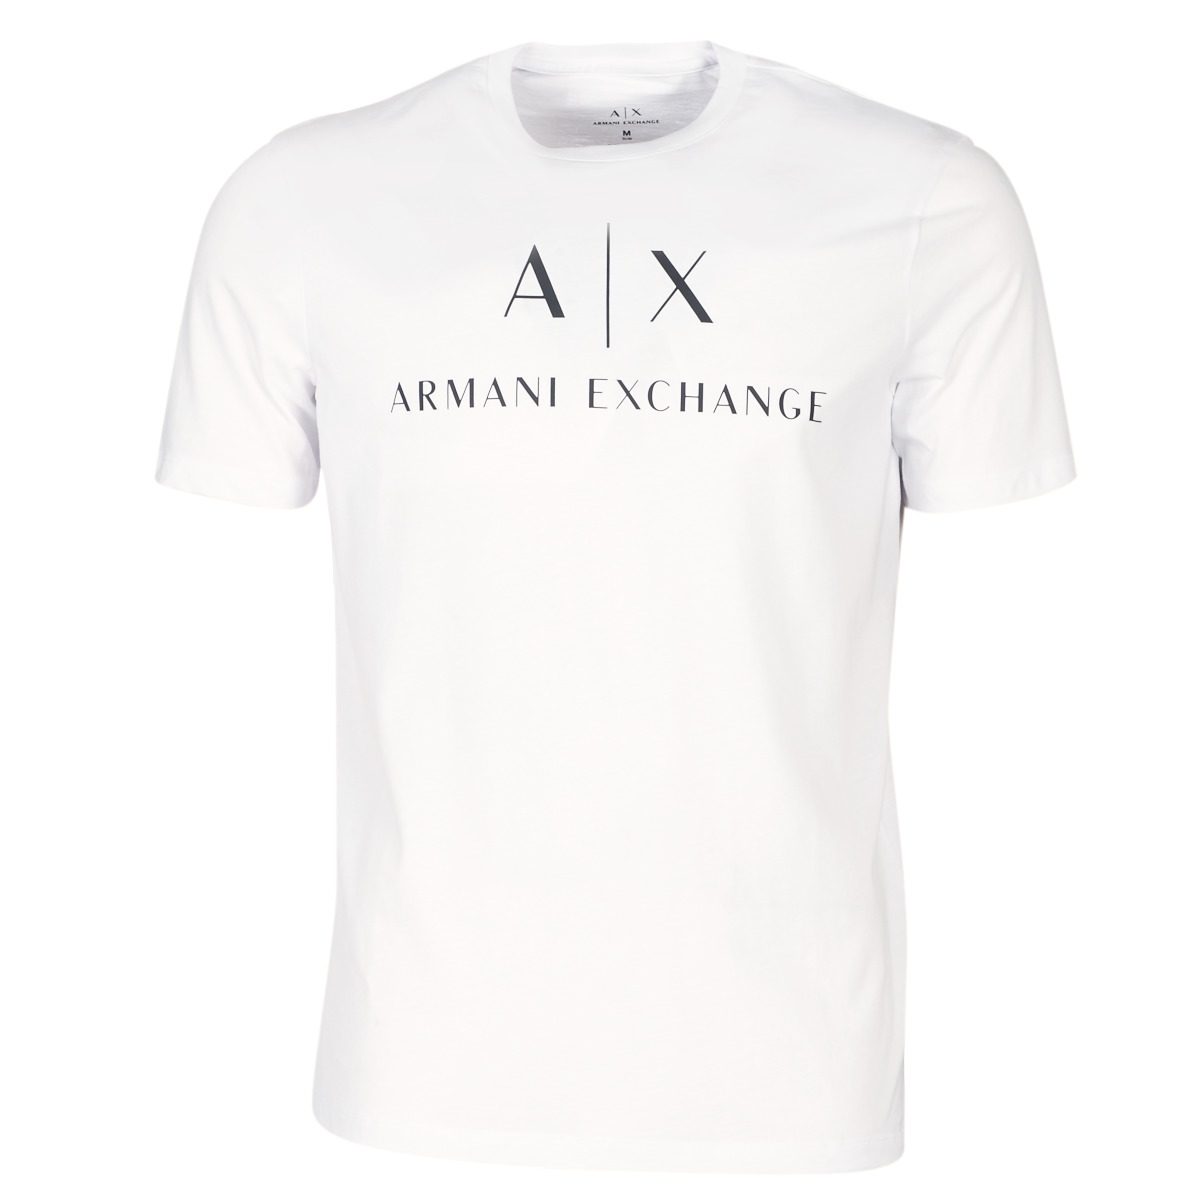 armani exchange clothing